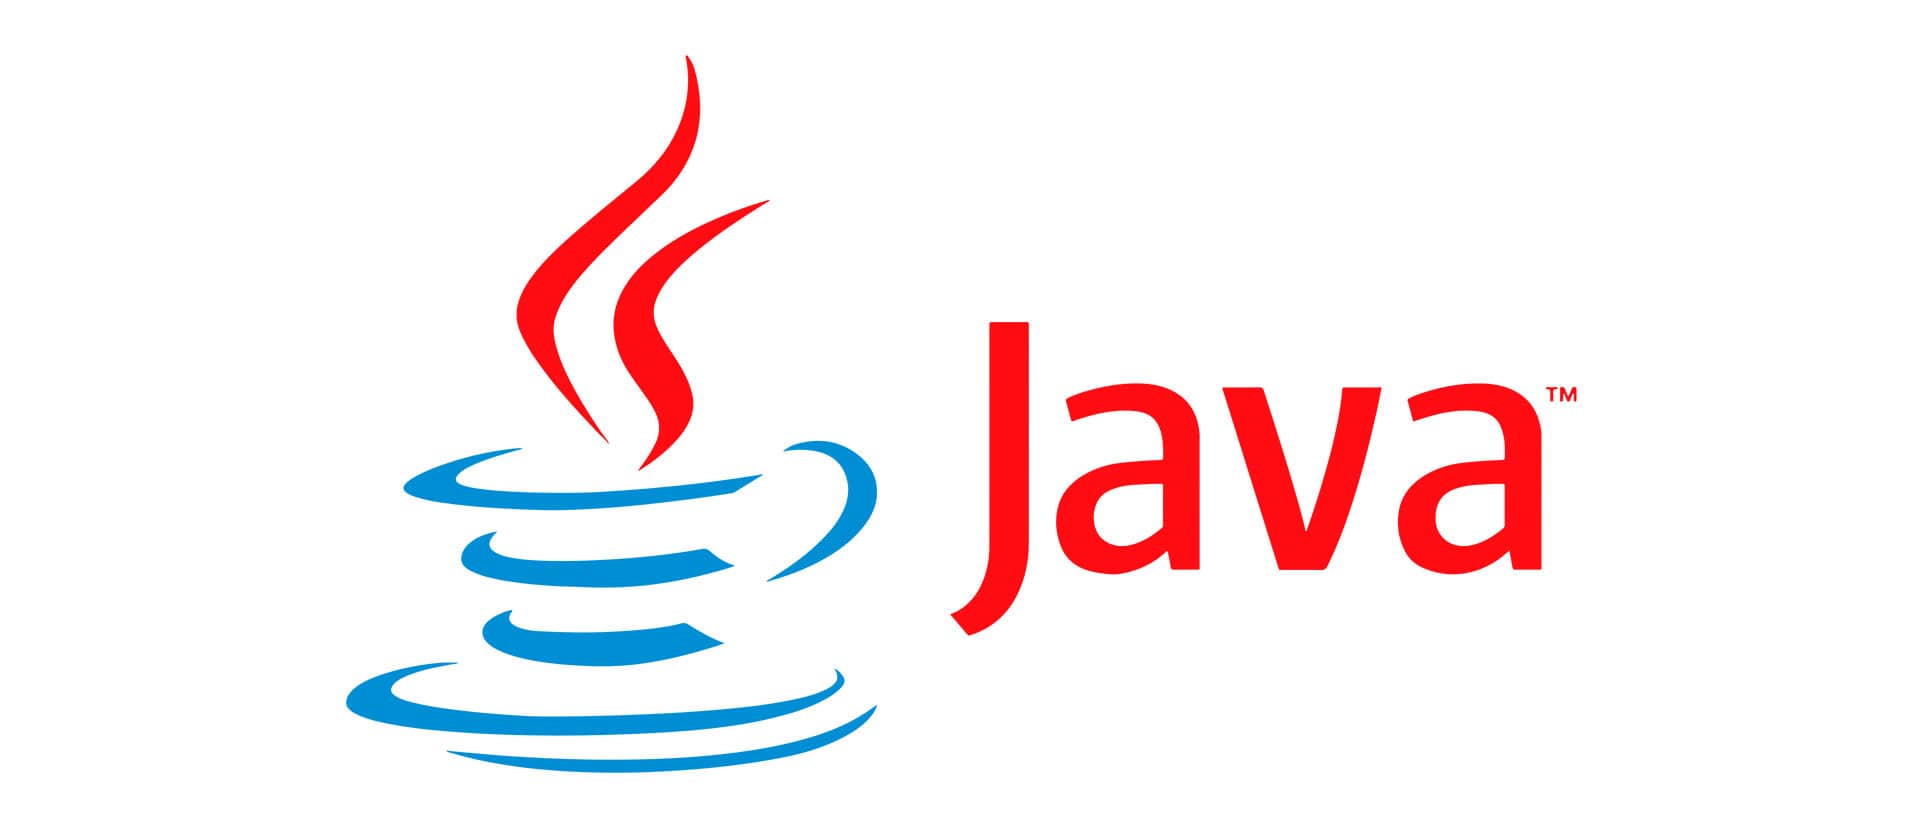 Java header. Java язык программирования logo. Jvaязык программирования логотип. Джава язык программирования логотип. Жавалоготип язык программирования.